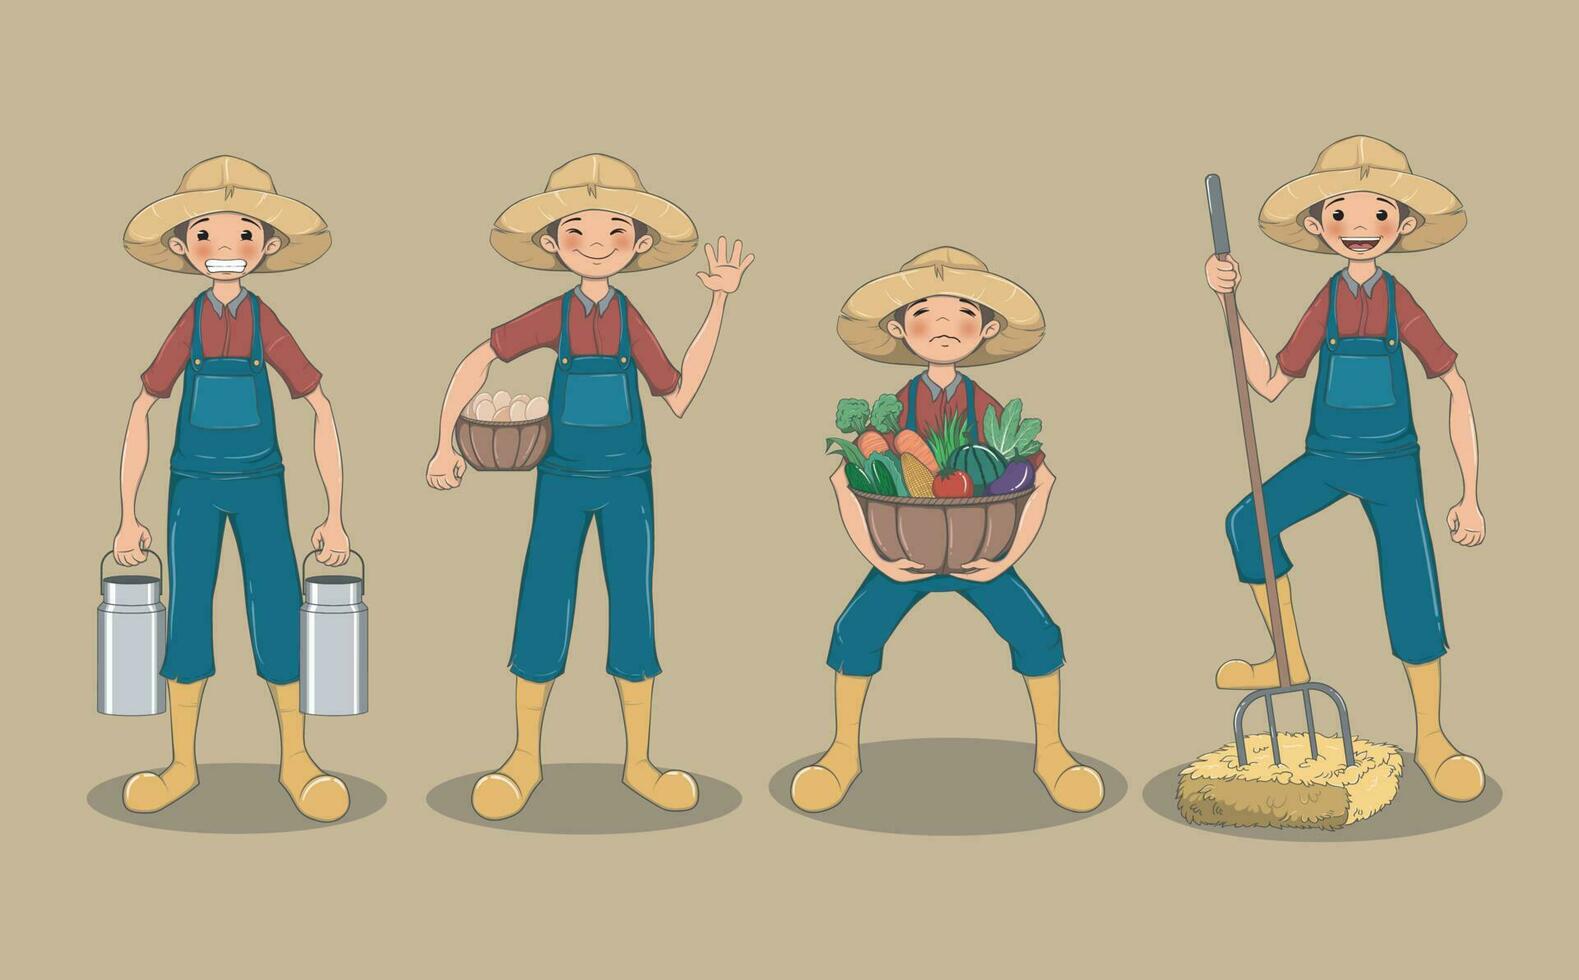 söt jordbrukare pojke karaktär i fyra verkan poserar, vektor illustration i tecknad serie stil